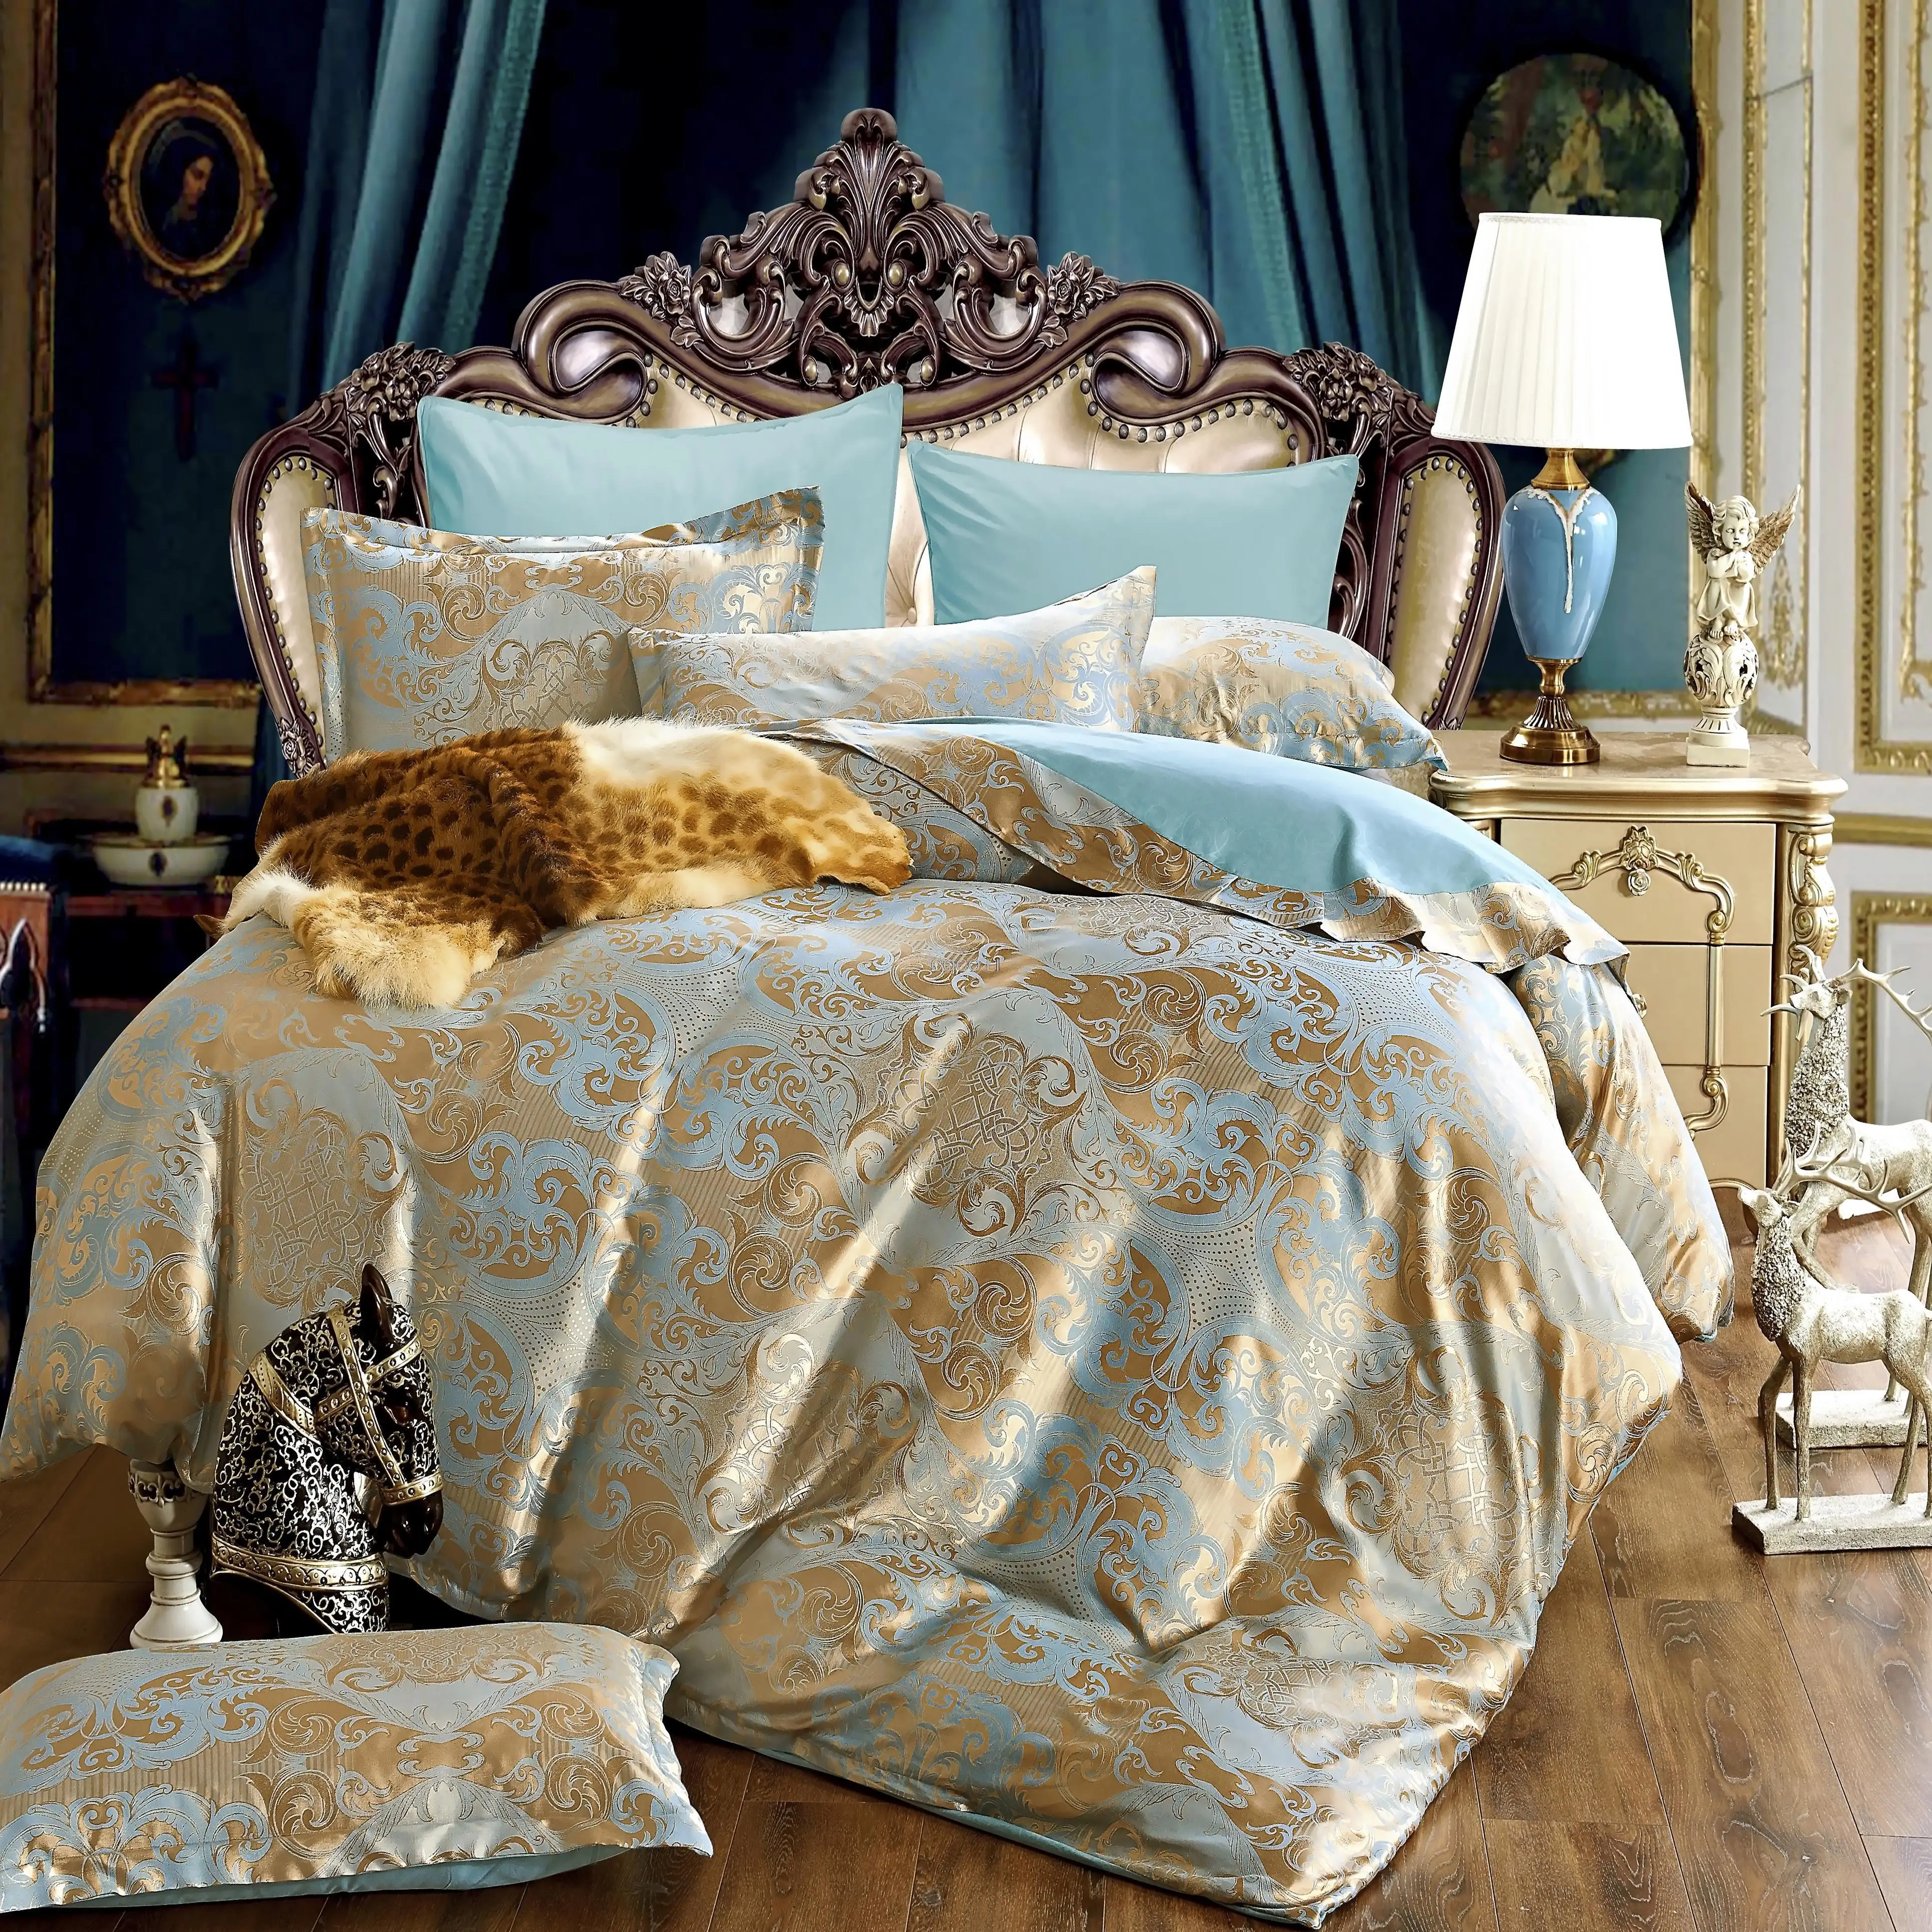 

40 шелковые сатин жаккард постельное белье постельные принадлежности Свадебные Благородный дворец Комплект постельного белья 4 шт. Queen